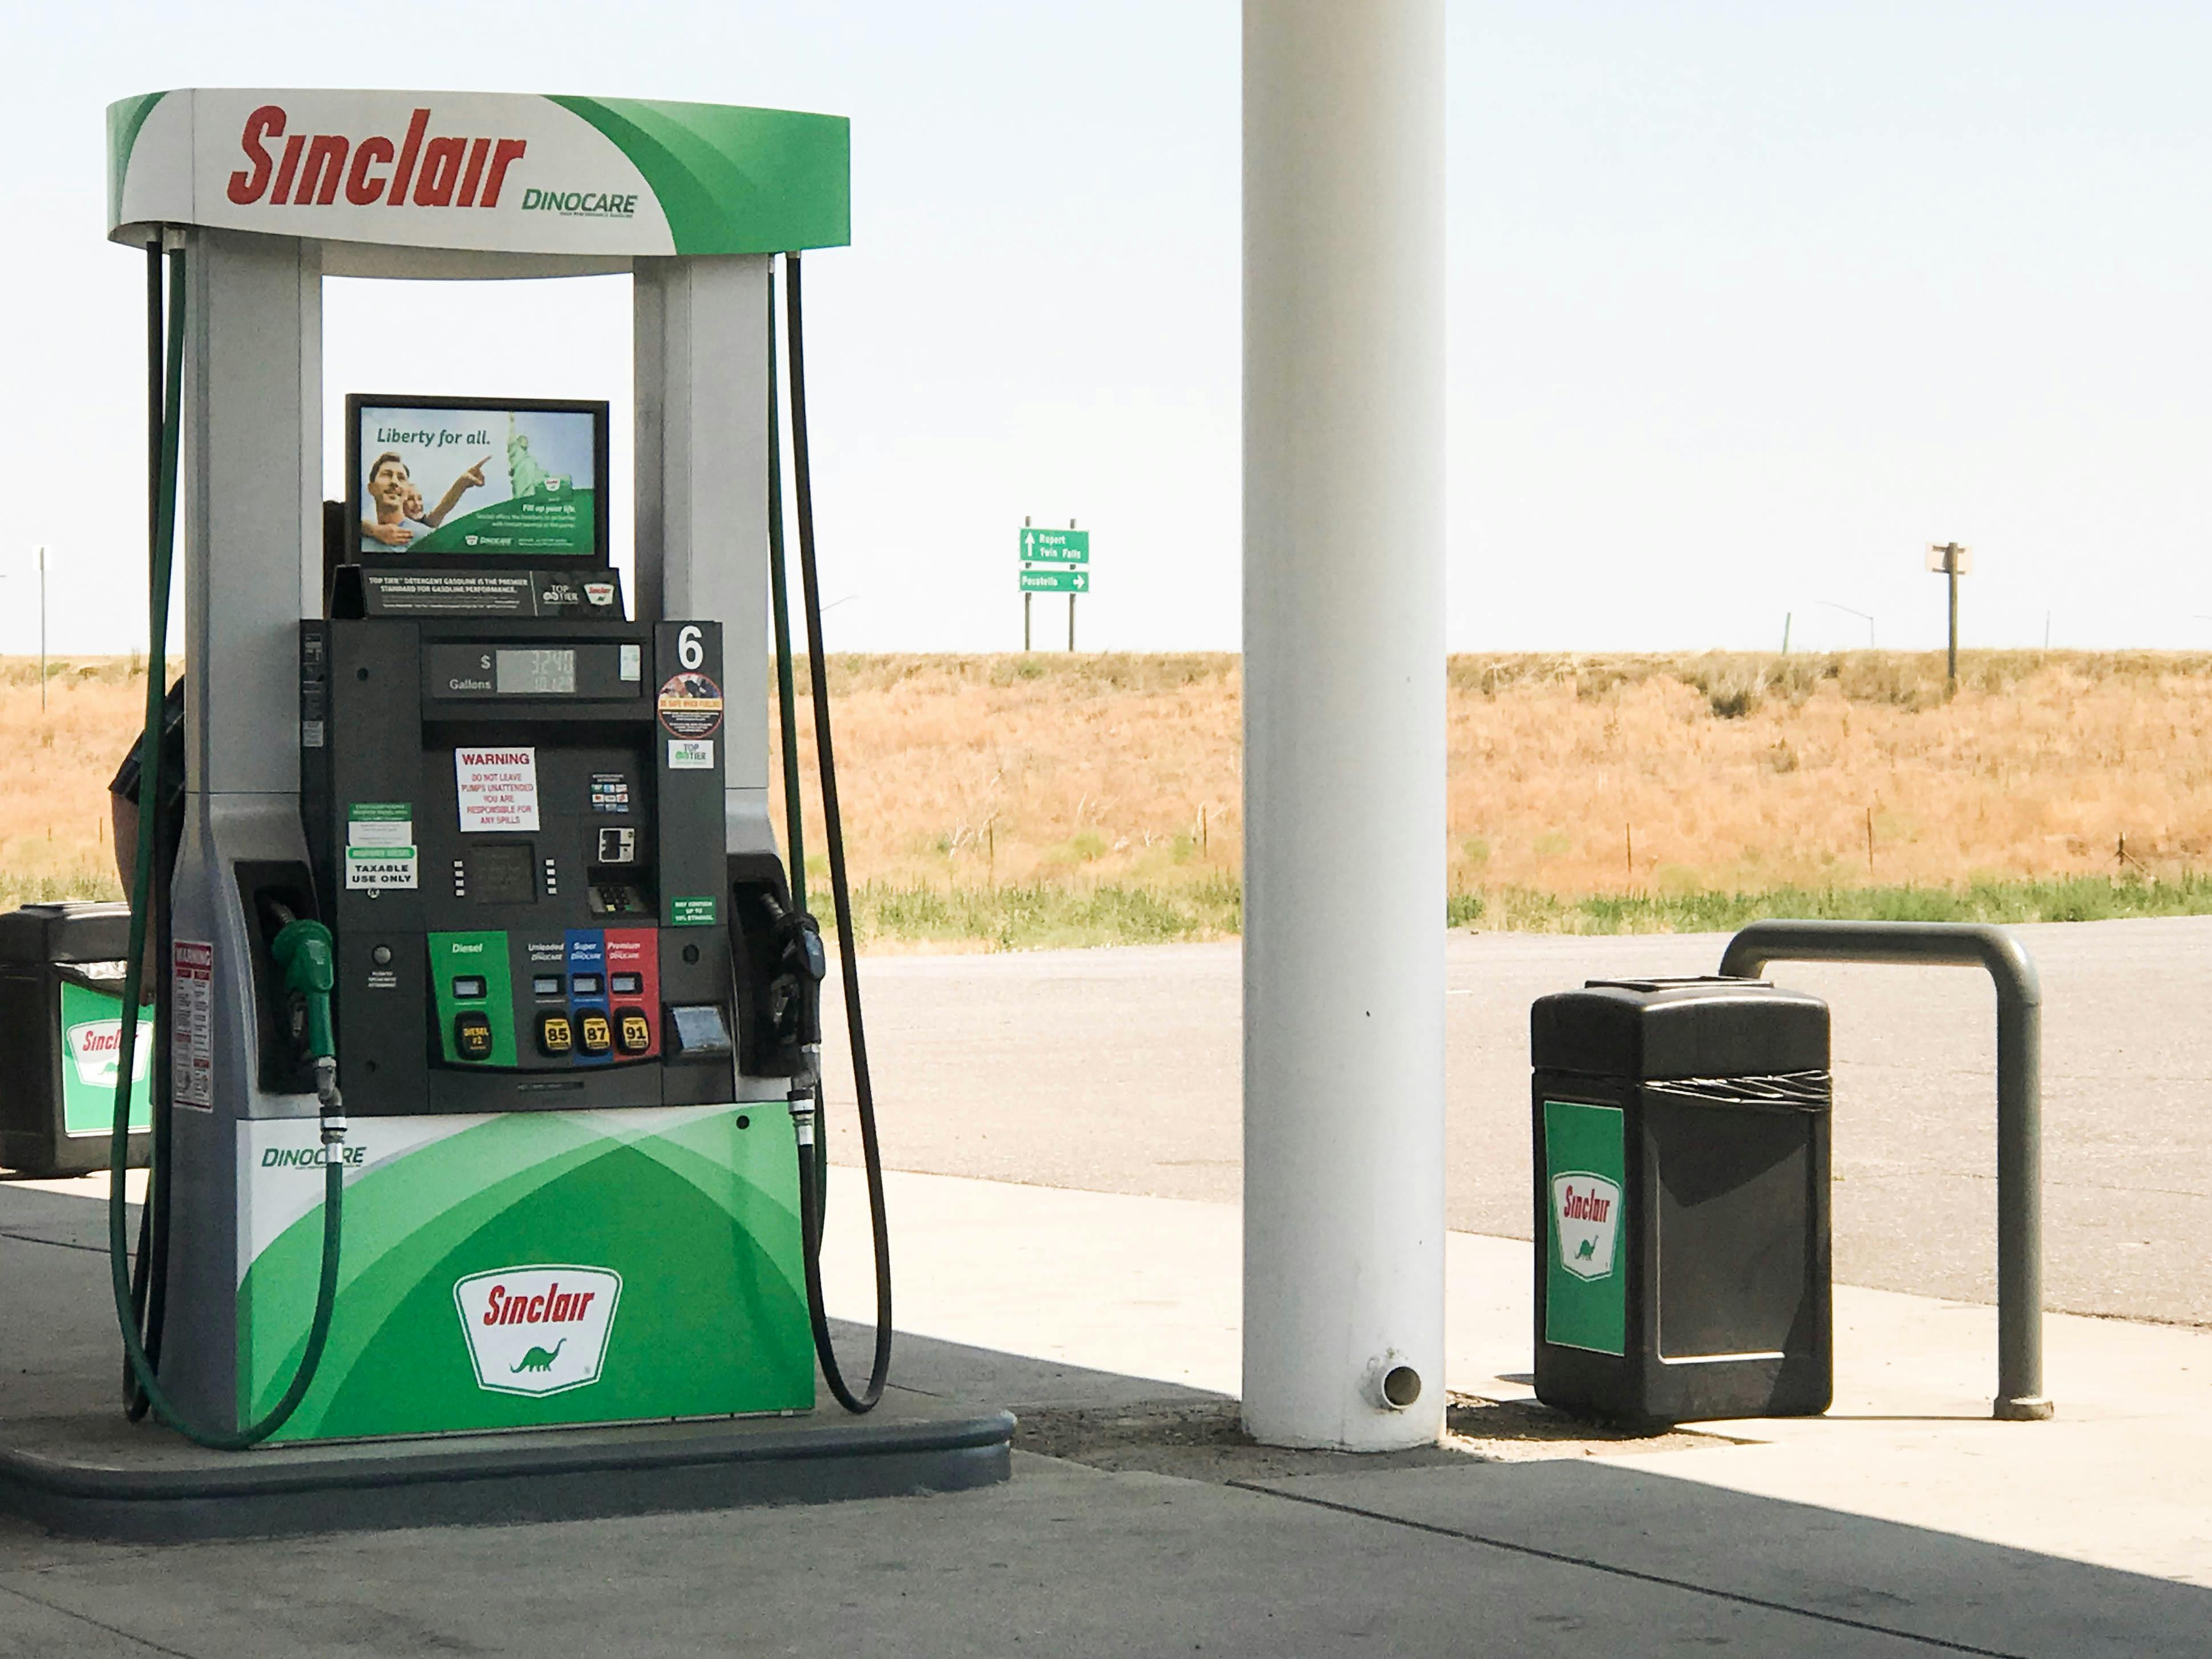 A Sinclair gas pump at a Sinclair gas station.